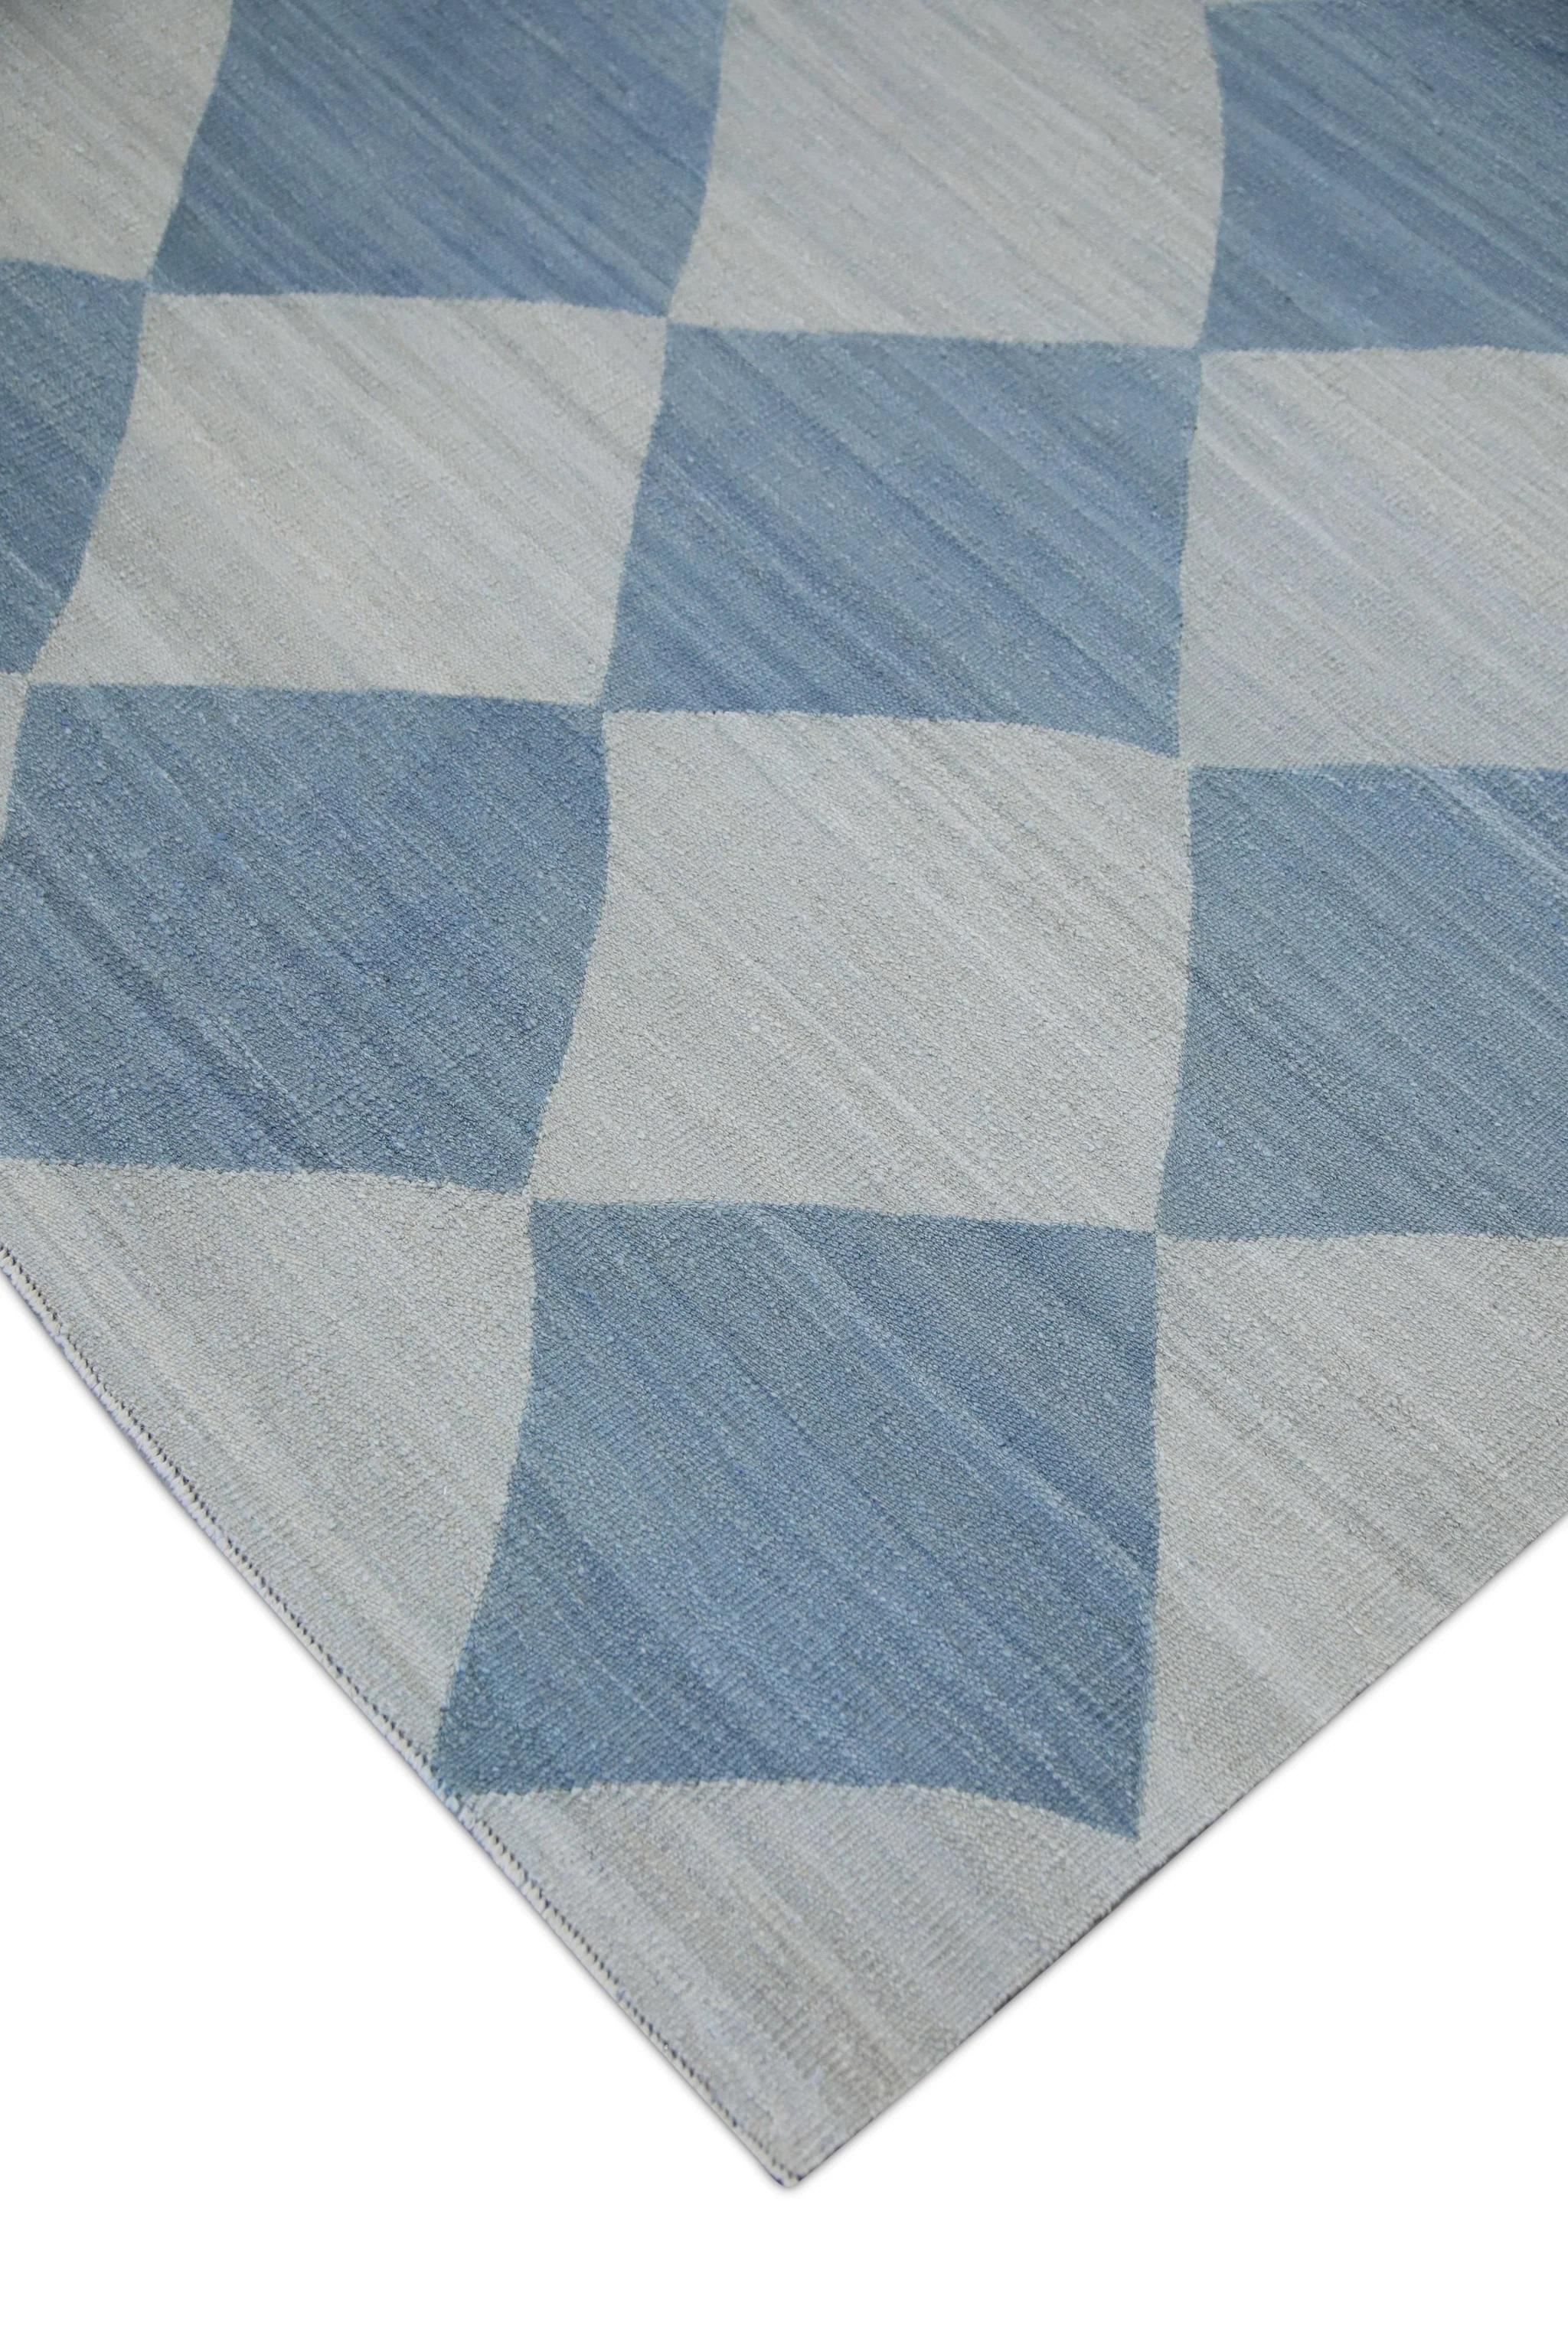 Vegetable Dyed Blue Checkered Pattern Flatweave Handmade Wool Rug 9'7